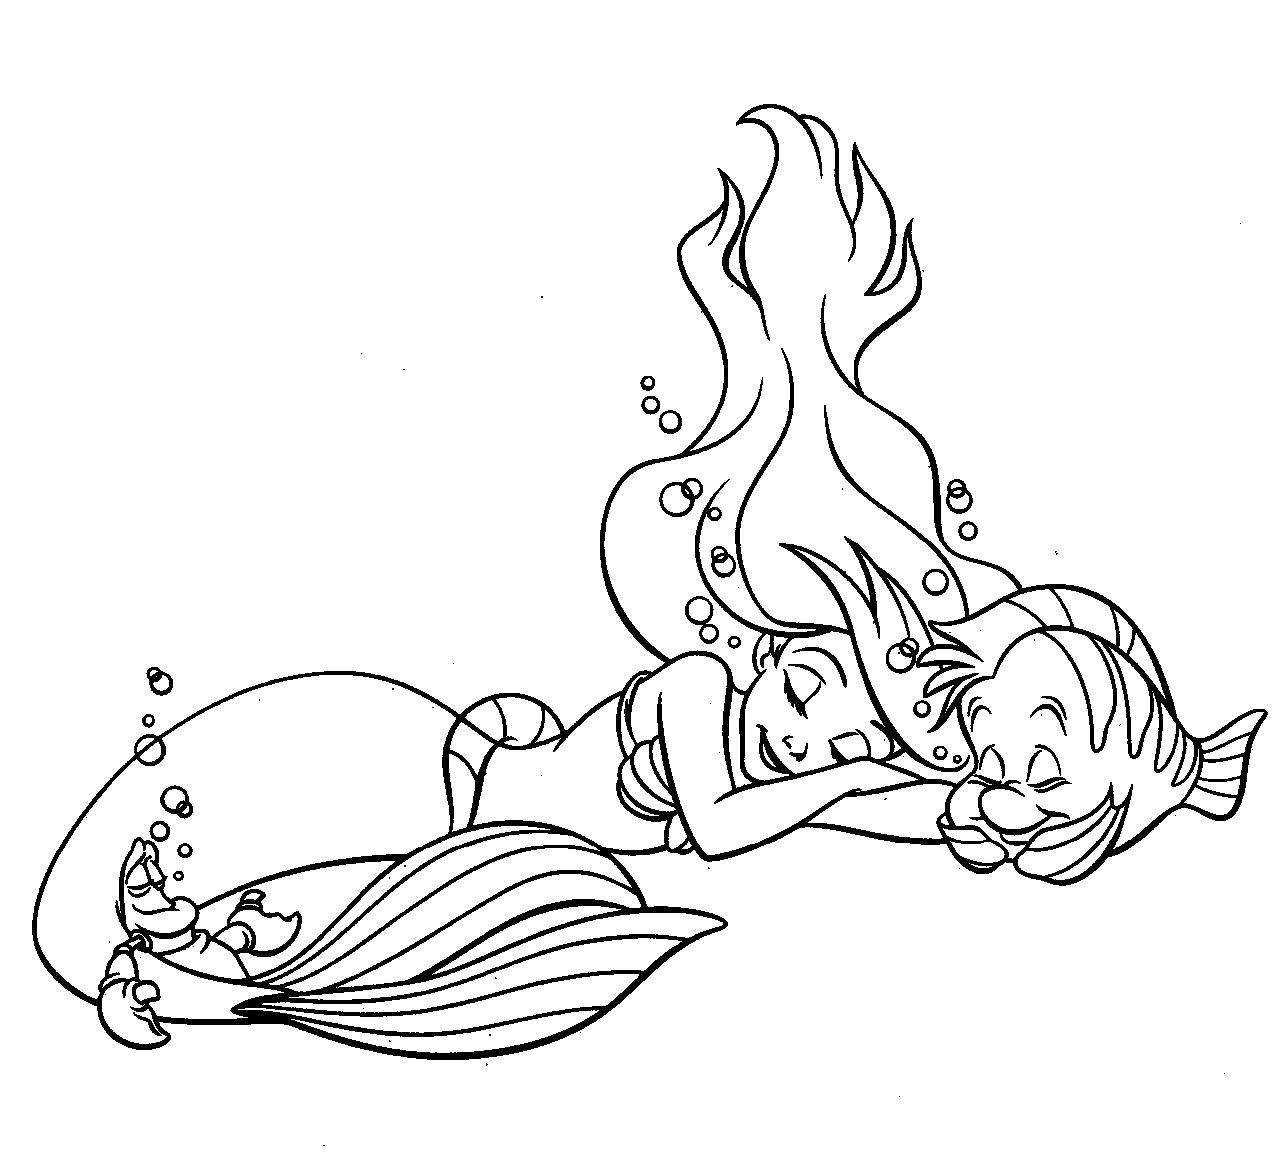 Coloring Mermaid sleeping. Category Sleep. Tags:  mermaid sleeps.